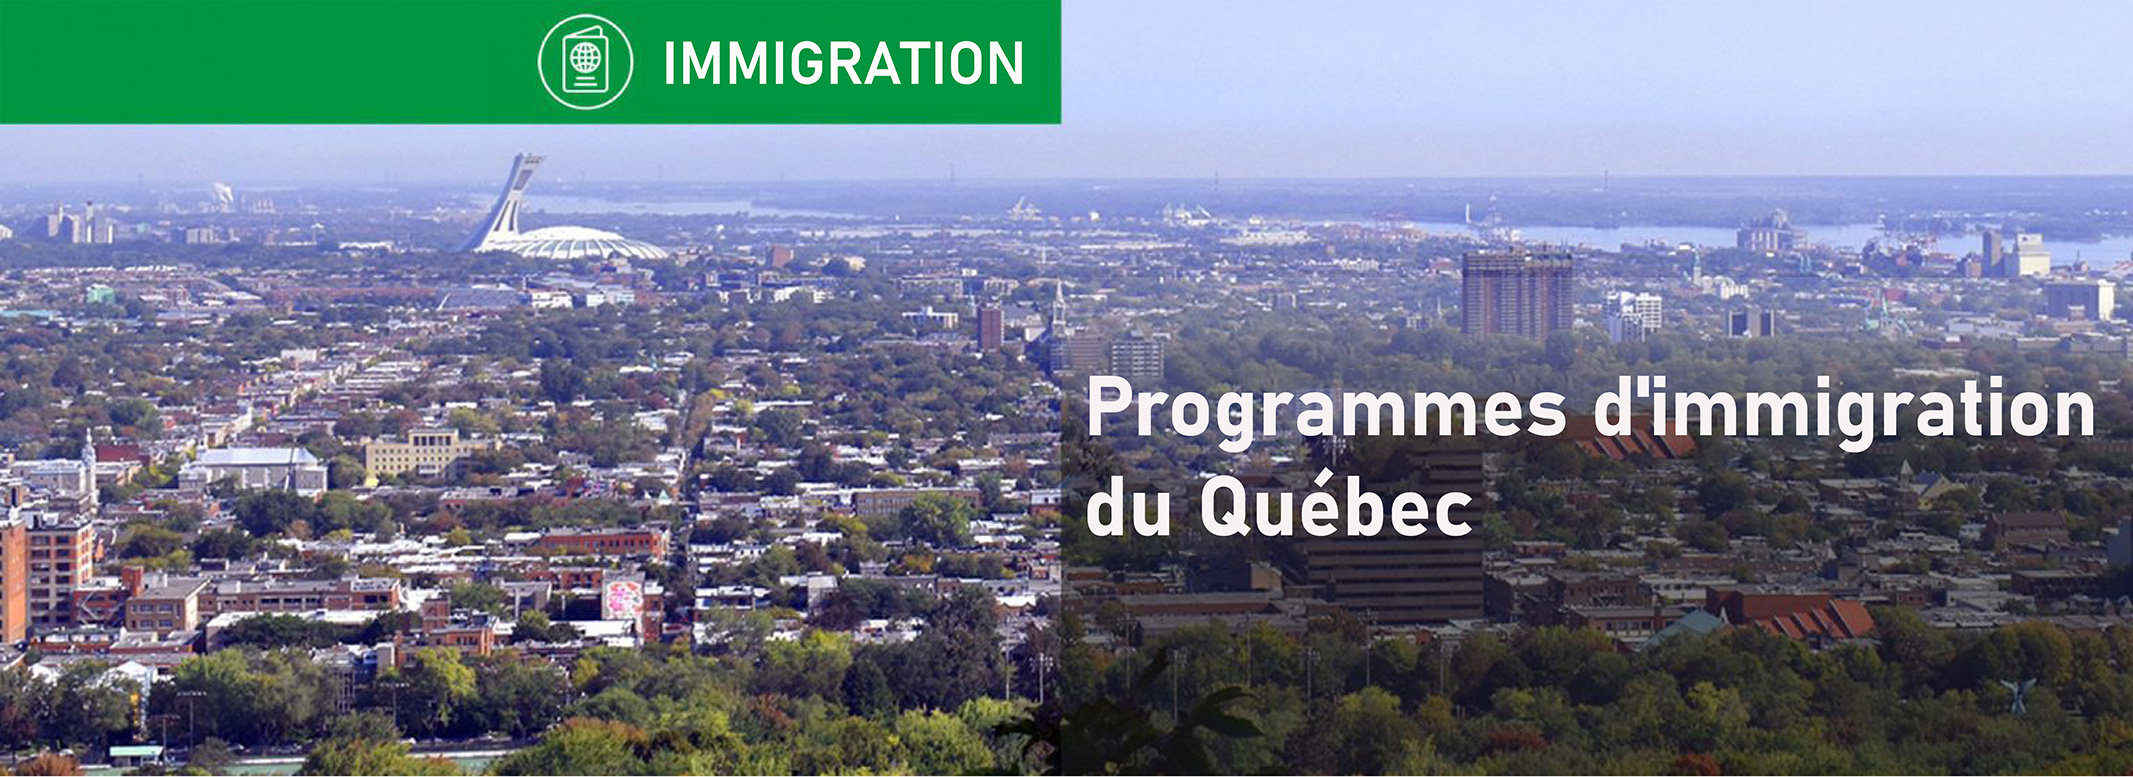 Programmes d'immigration au Québec